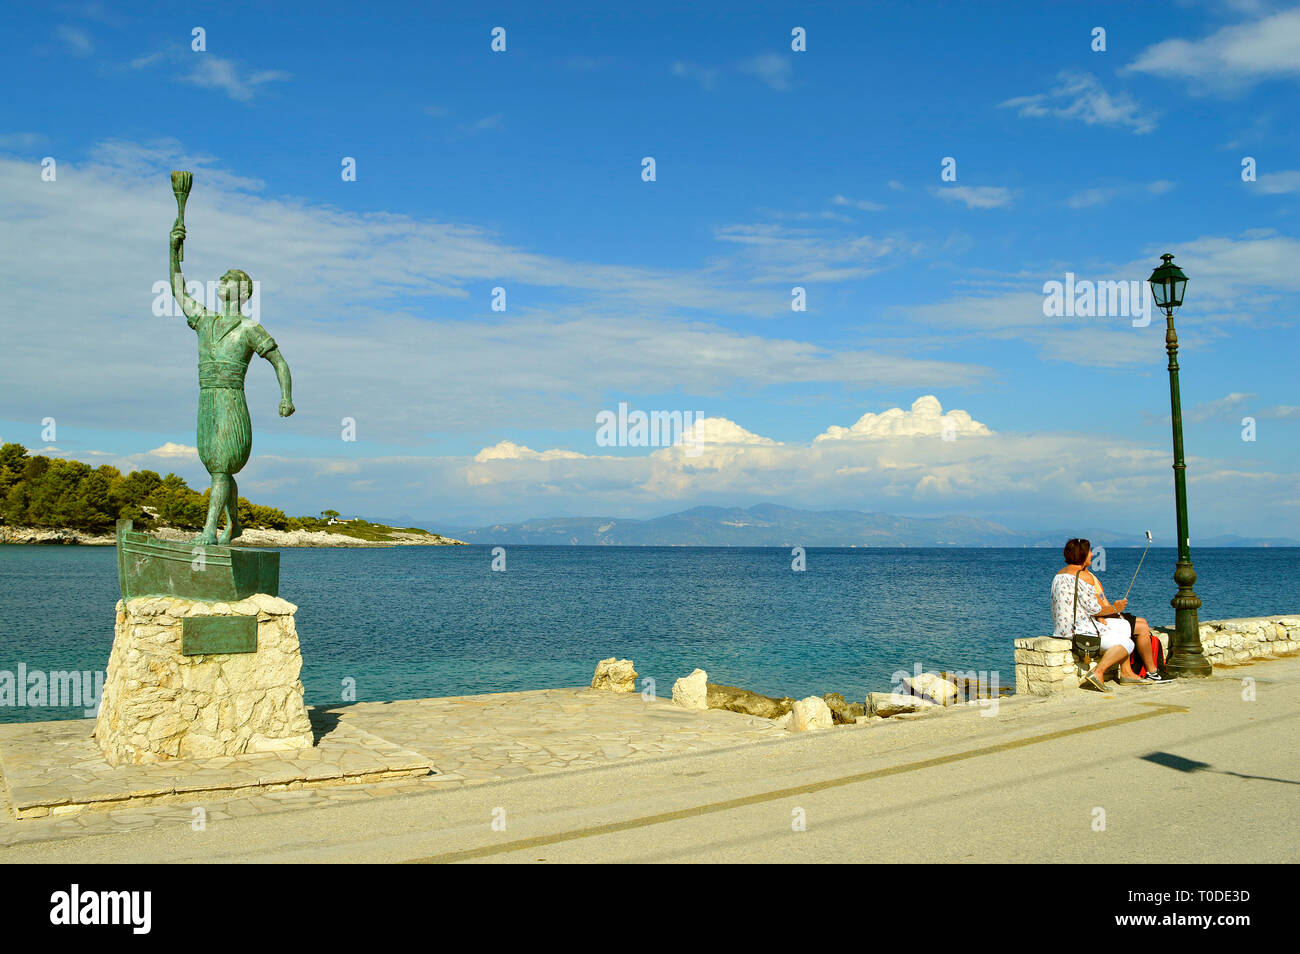 Una statua di pyropolitis un eroe nella Rivoluzione greca, con turisti prendendo un selfie foto Foto Stock